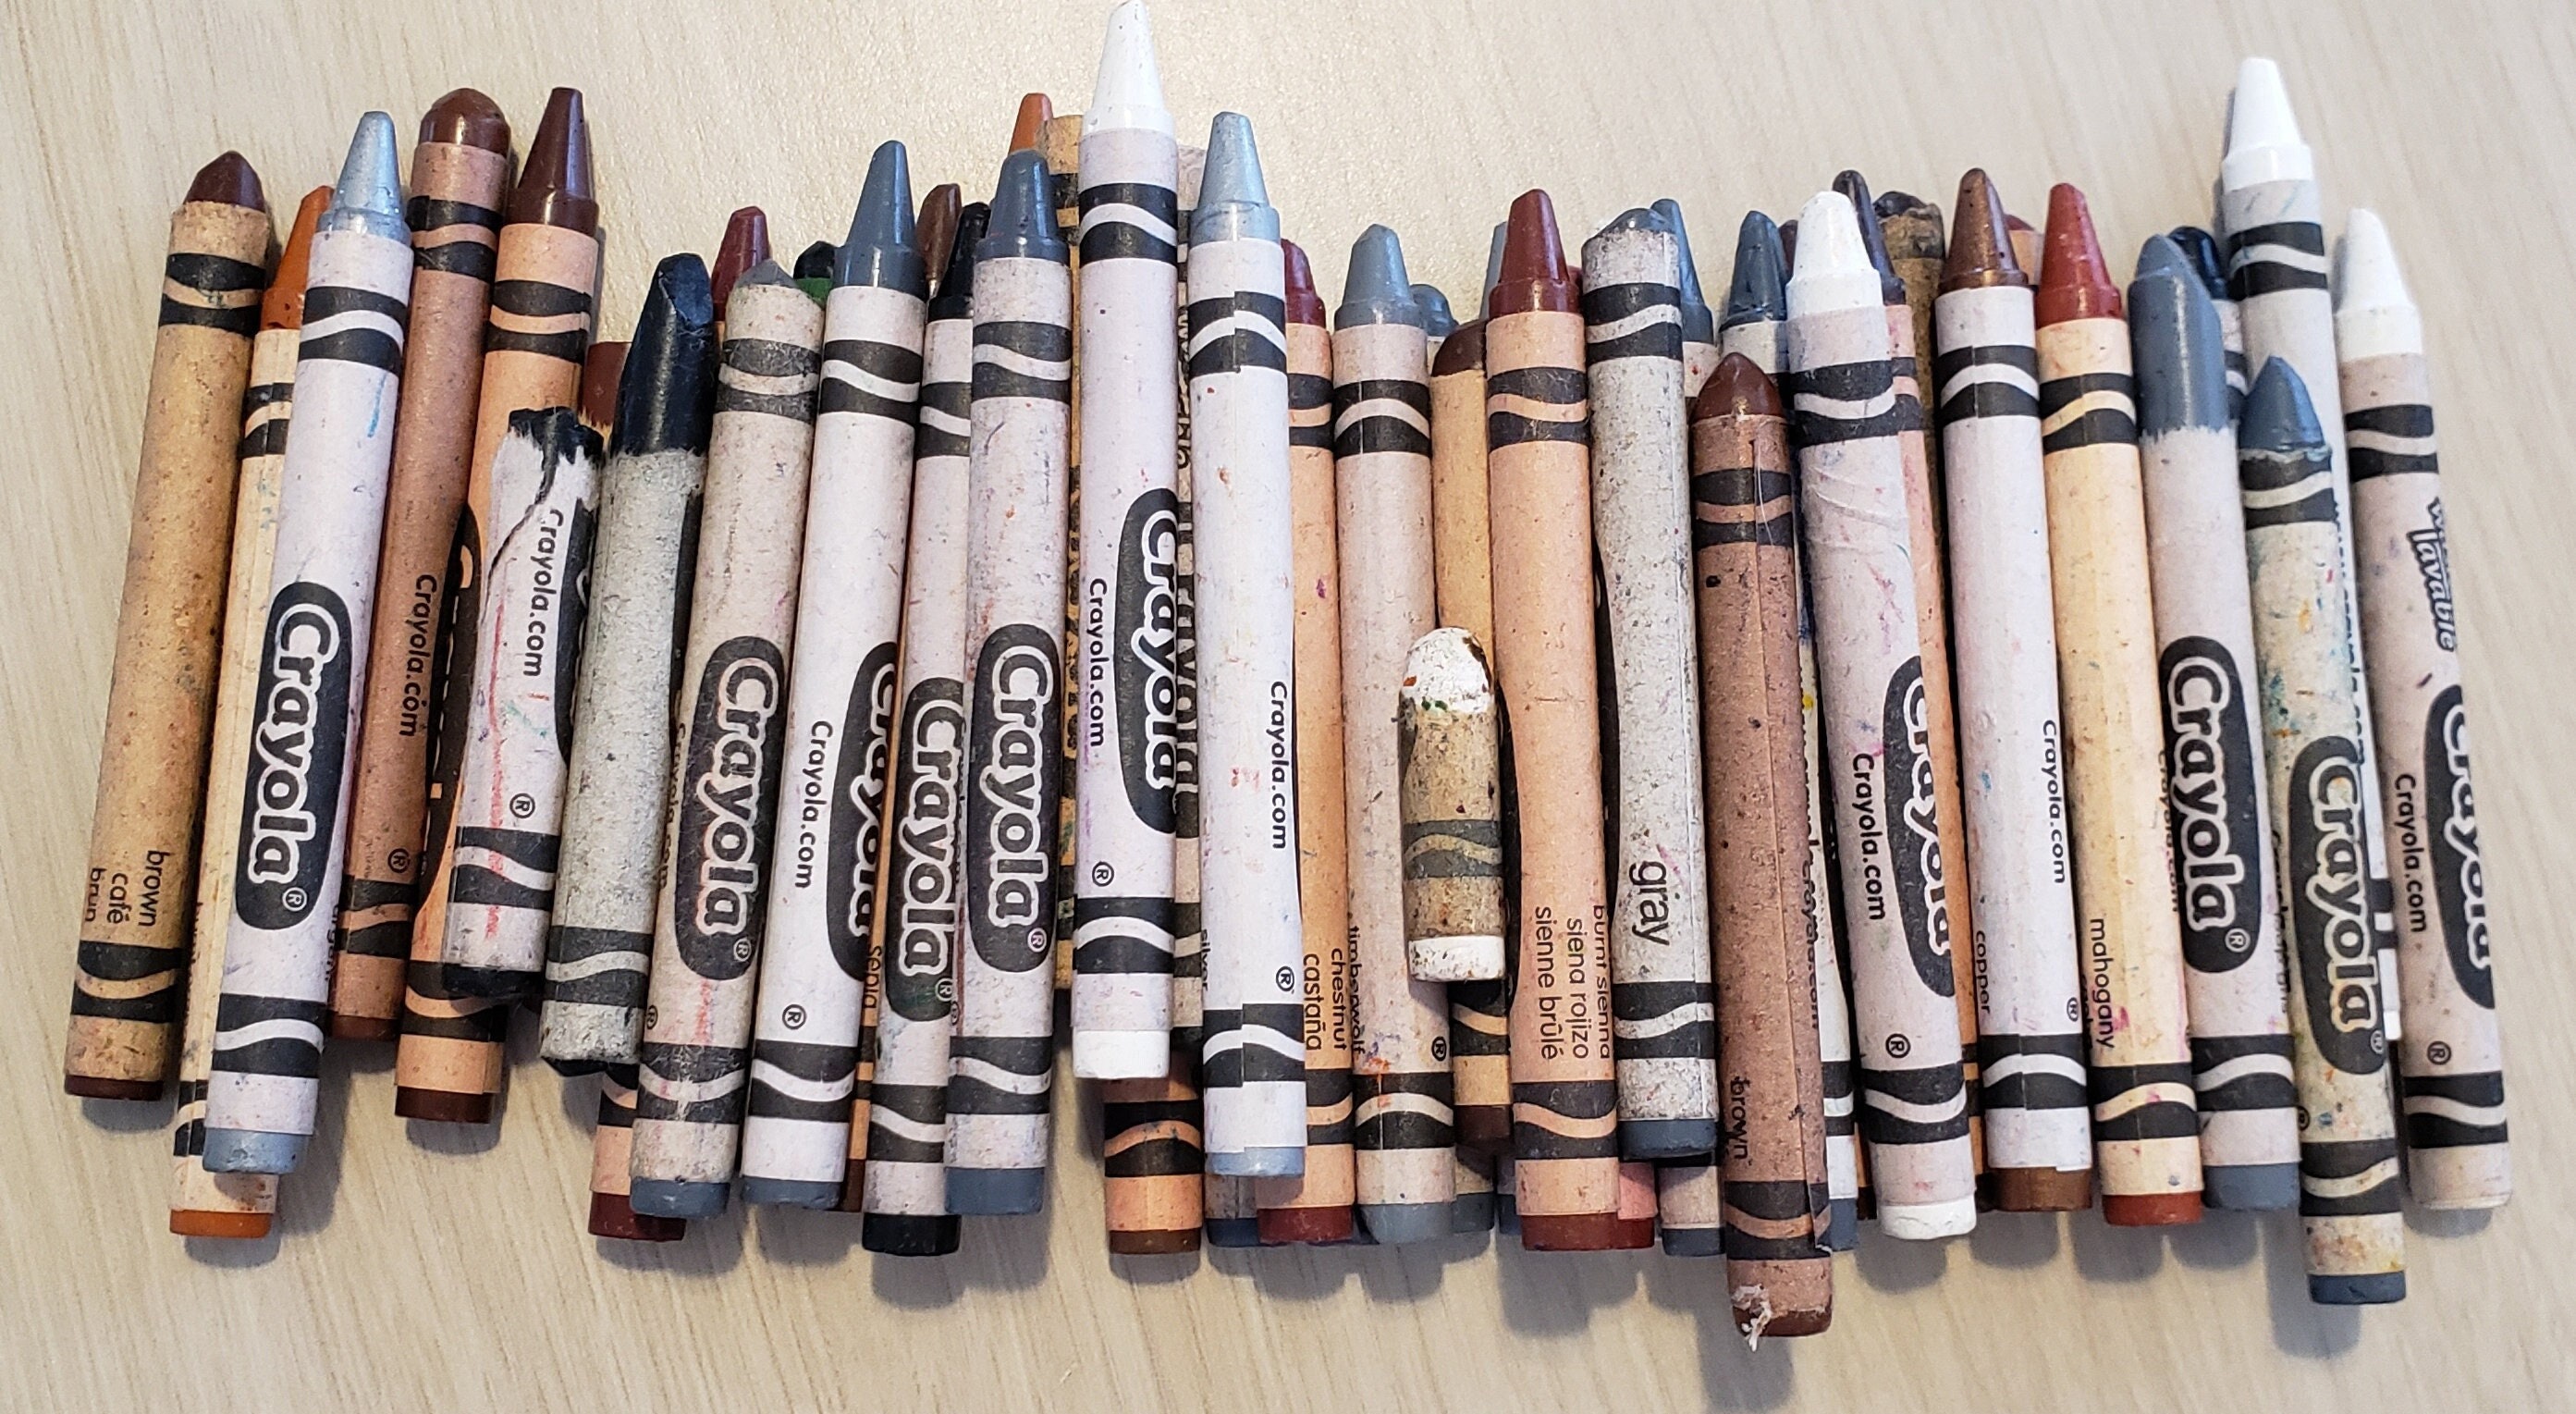 Black Crayons 45 Crayons Crayola Crayons Bulk Crayons Refill